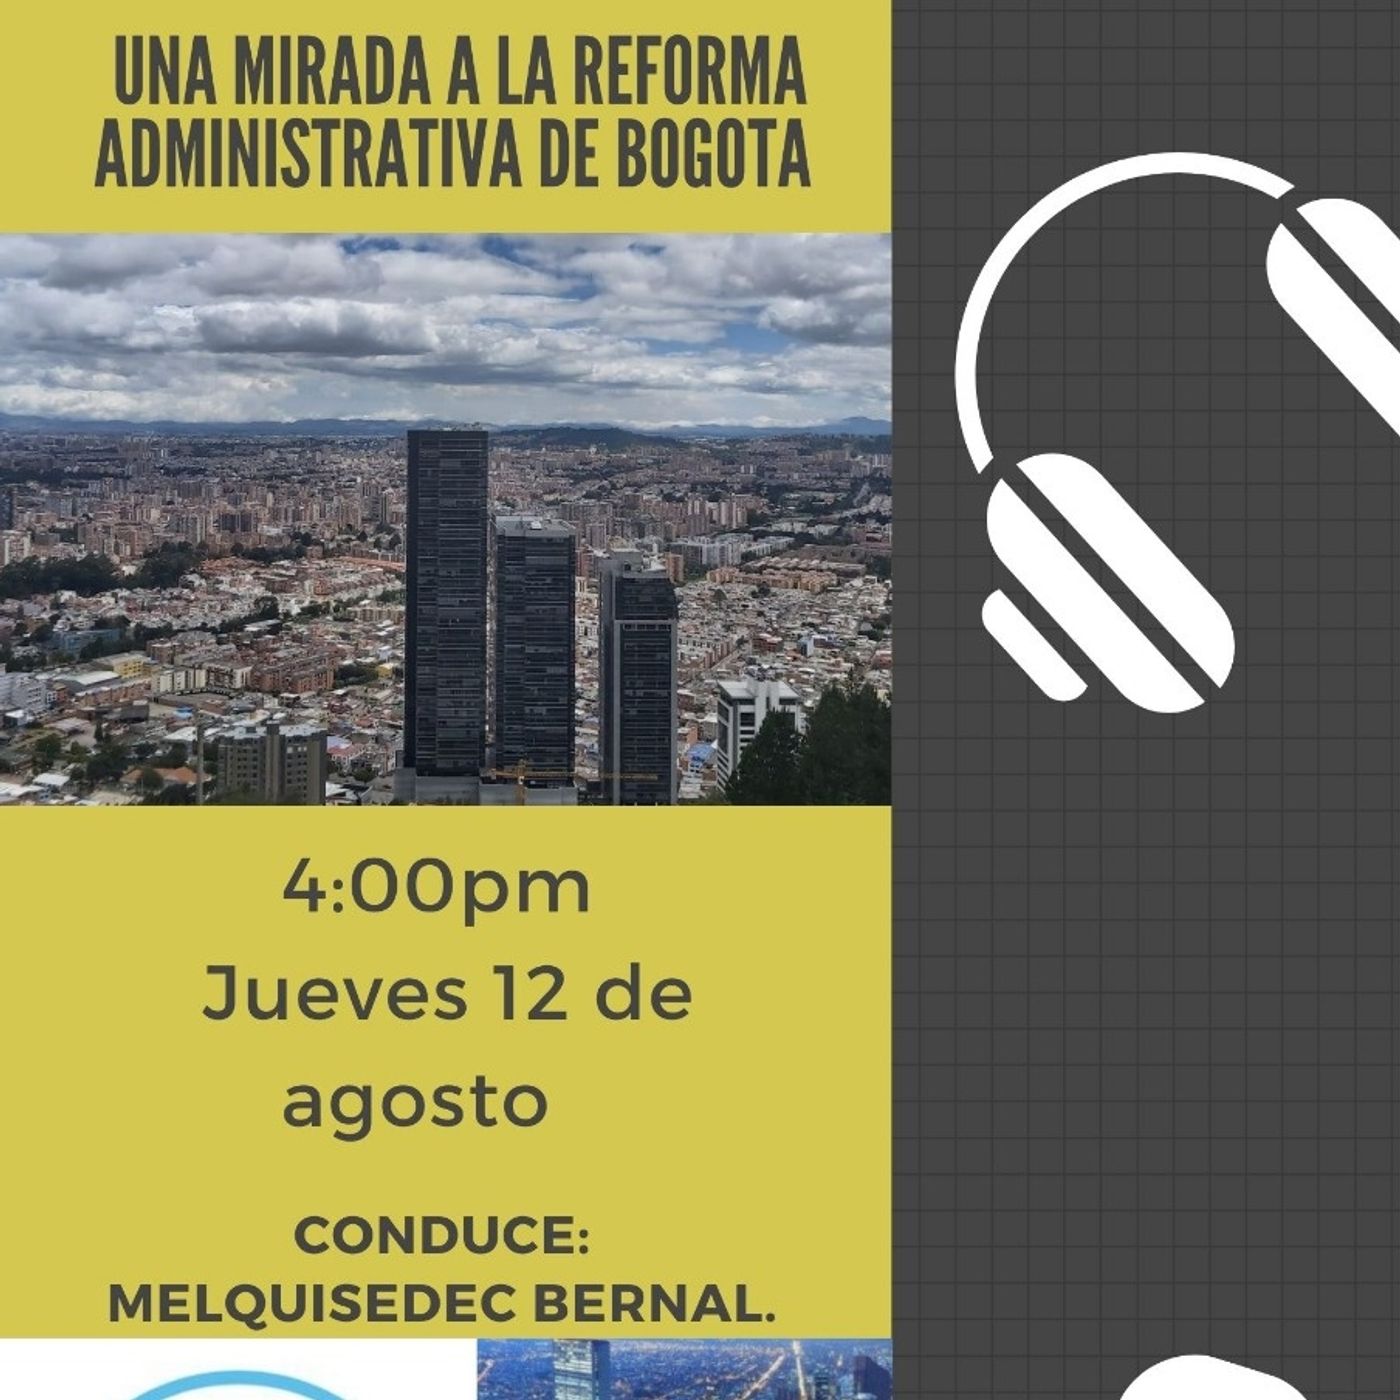 Una mirada a la reforma administrativa de Bogotá